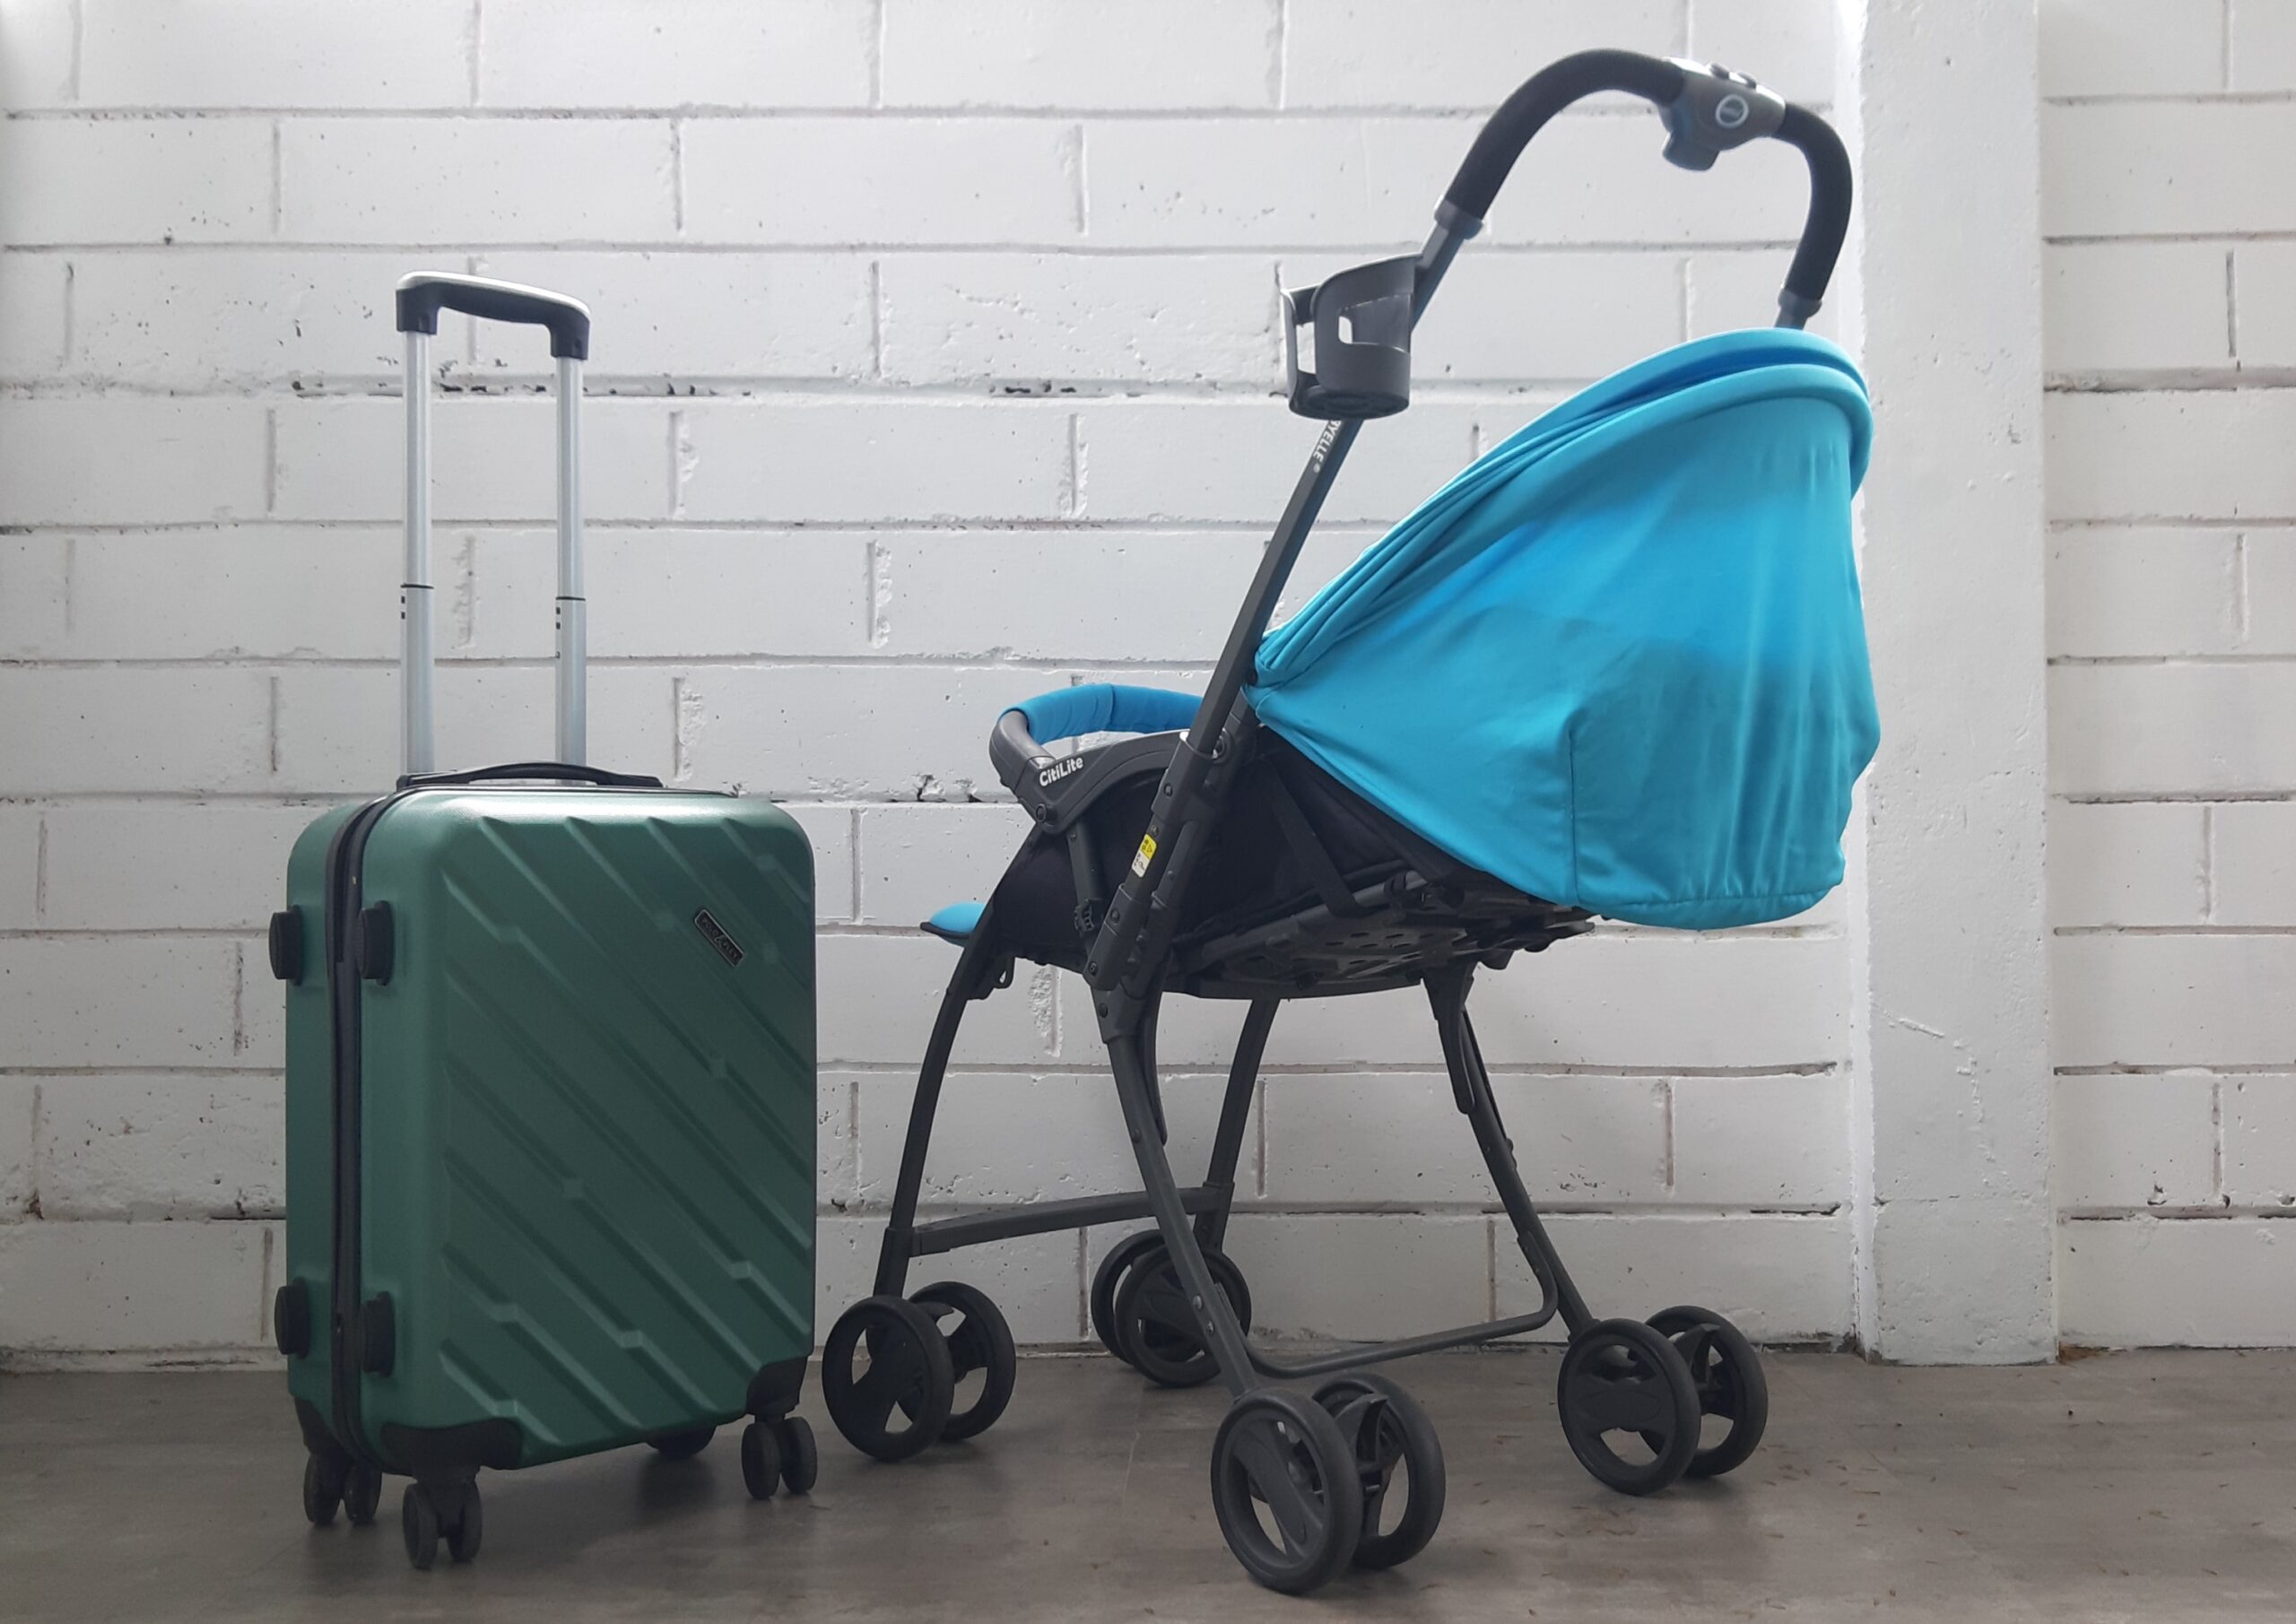 Ilustrasi koper dan stroller - Tips liburan seru dan nyaman bersama anak bayi. (kamuswisata.com/akb)